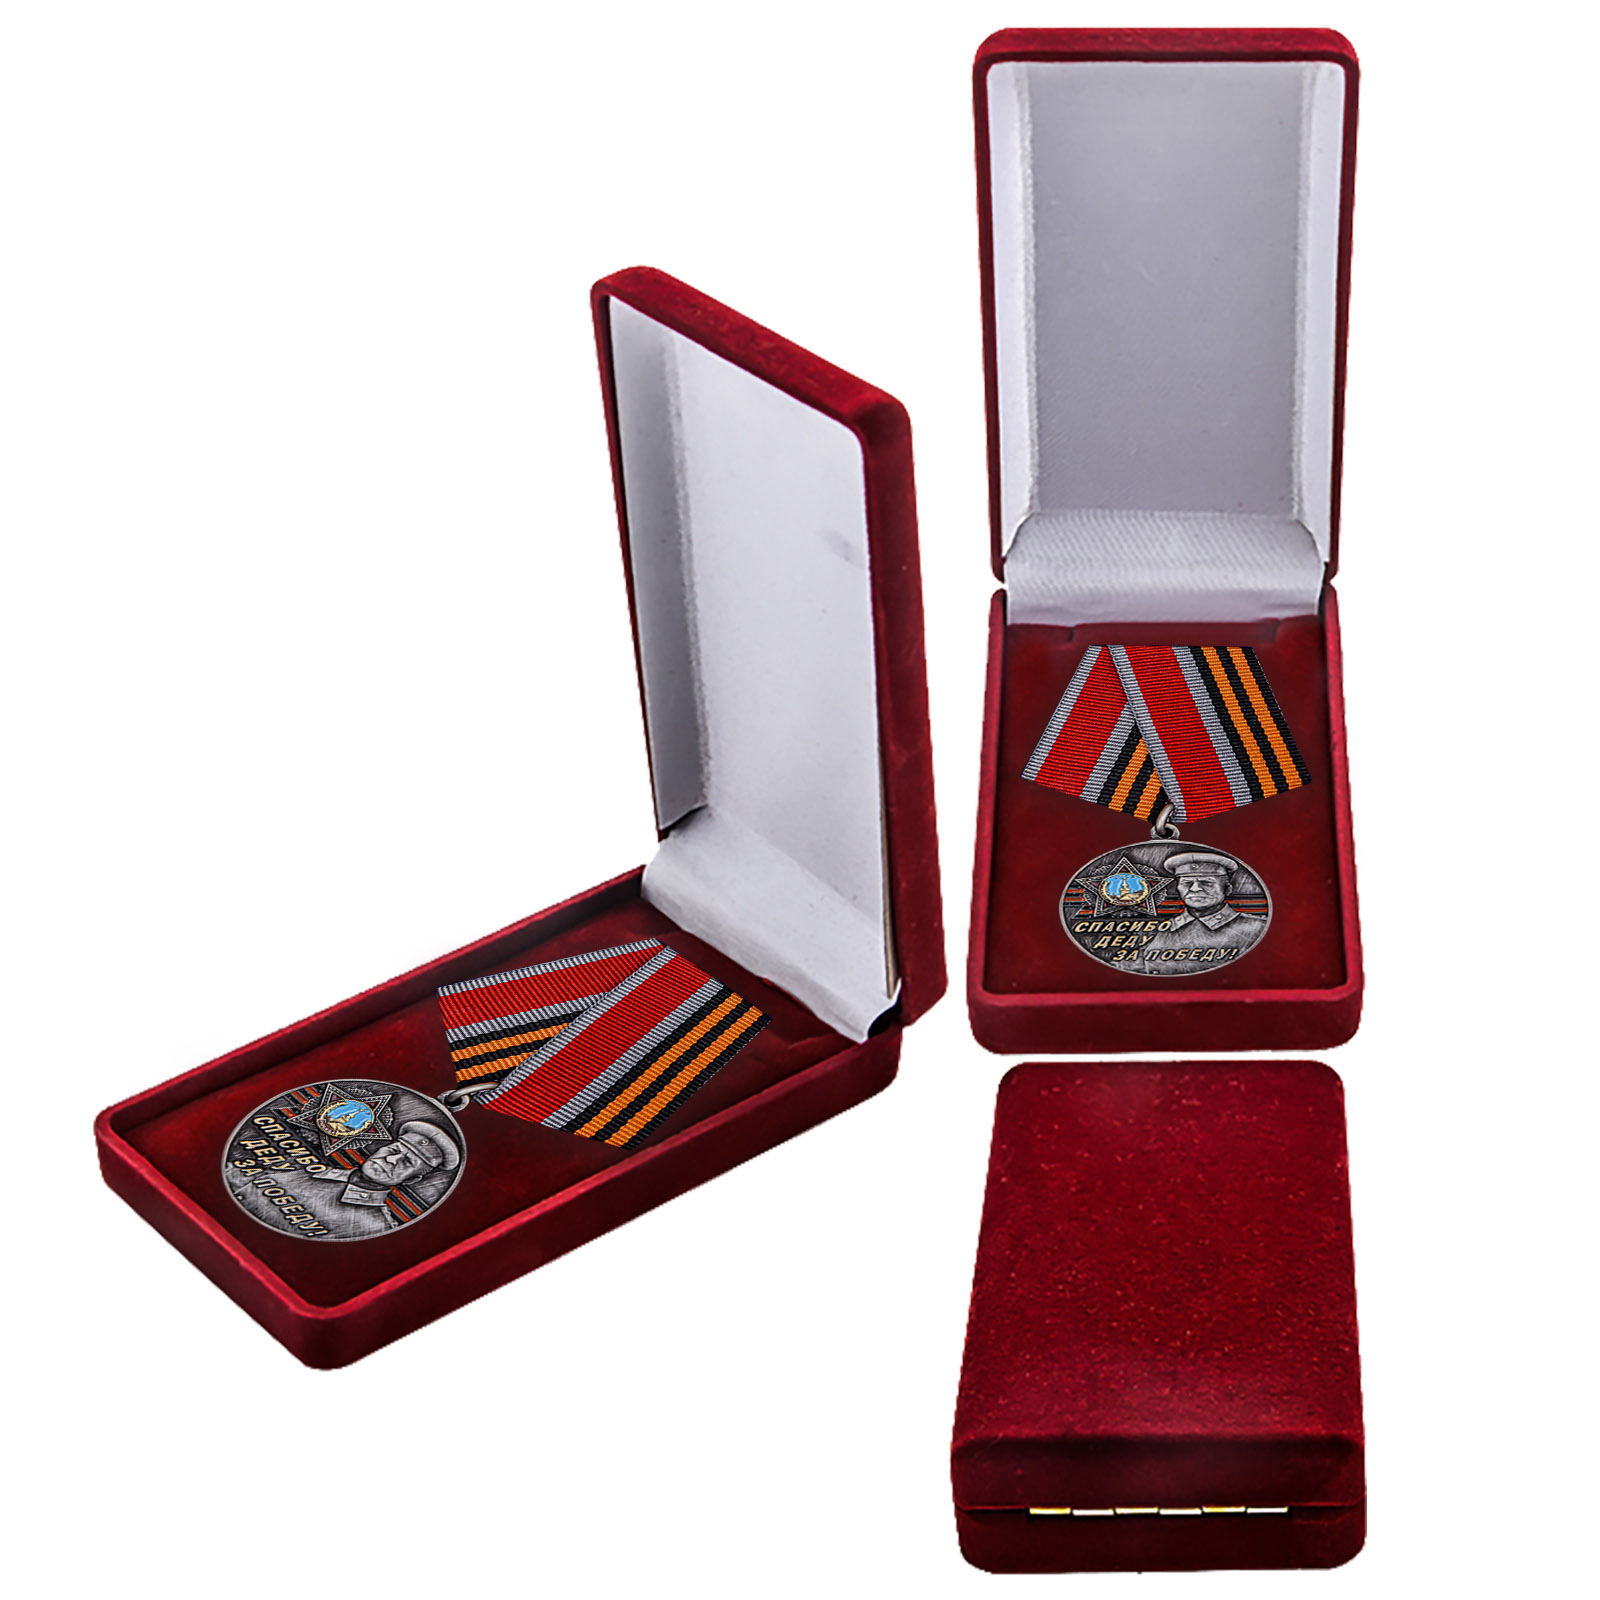 Купить памятную медаль со Сталиным Спасибо деду за Победу! онлайн выгодно